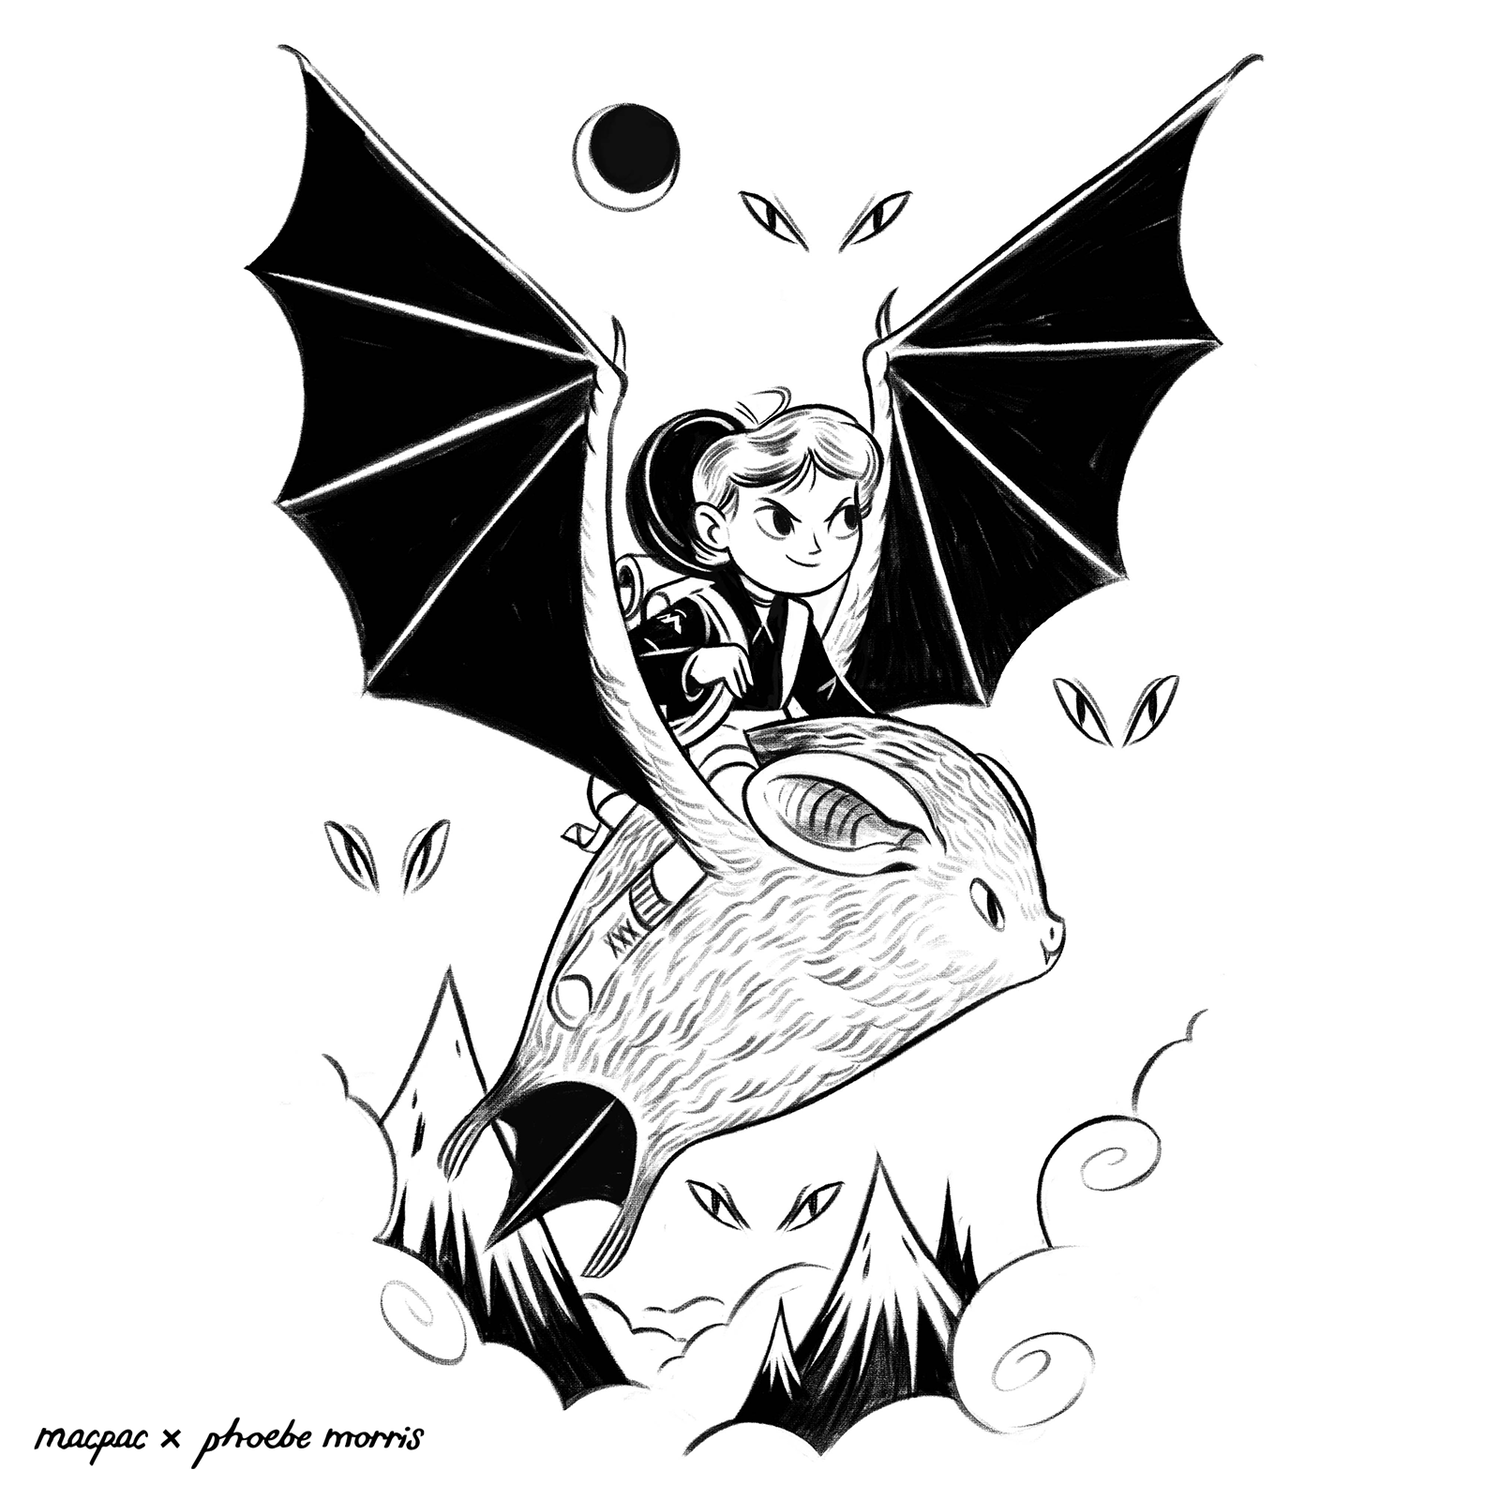 phoebe-morris-macpac-bat.png